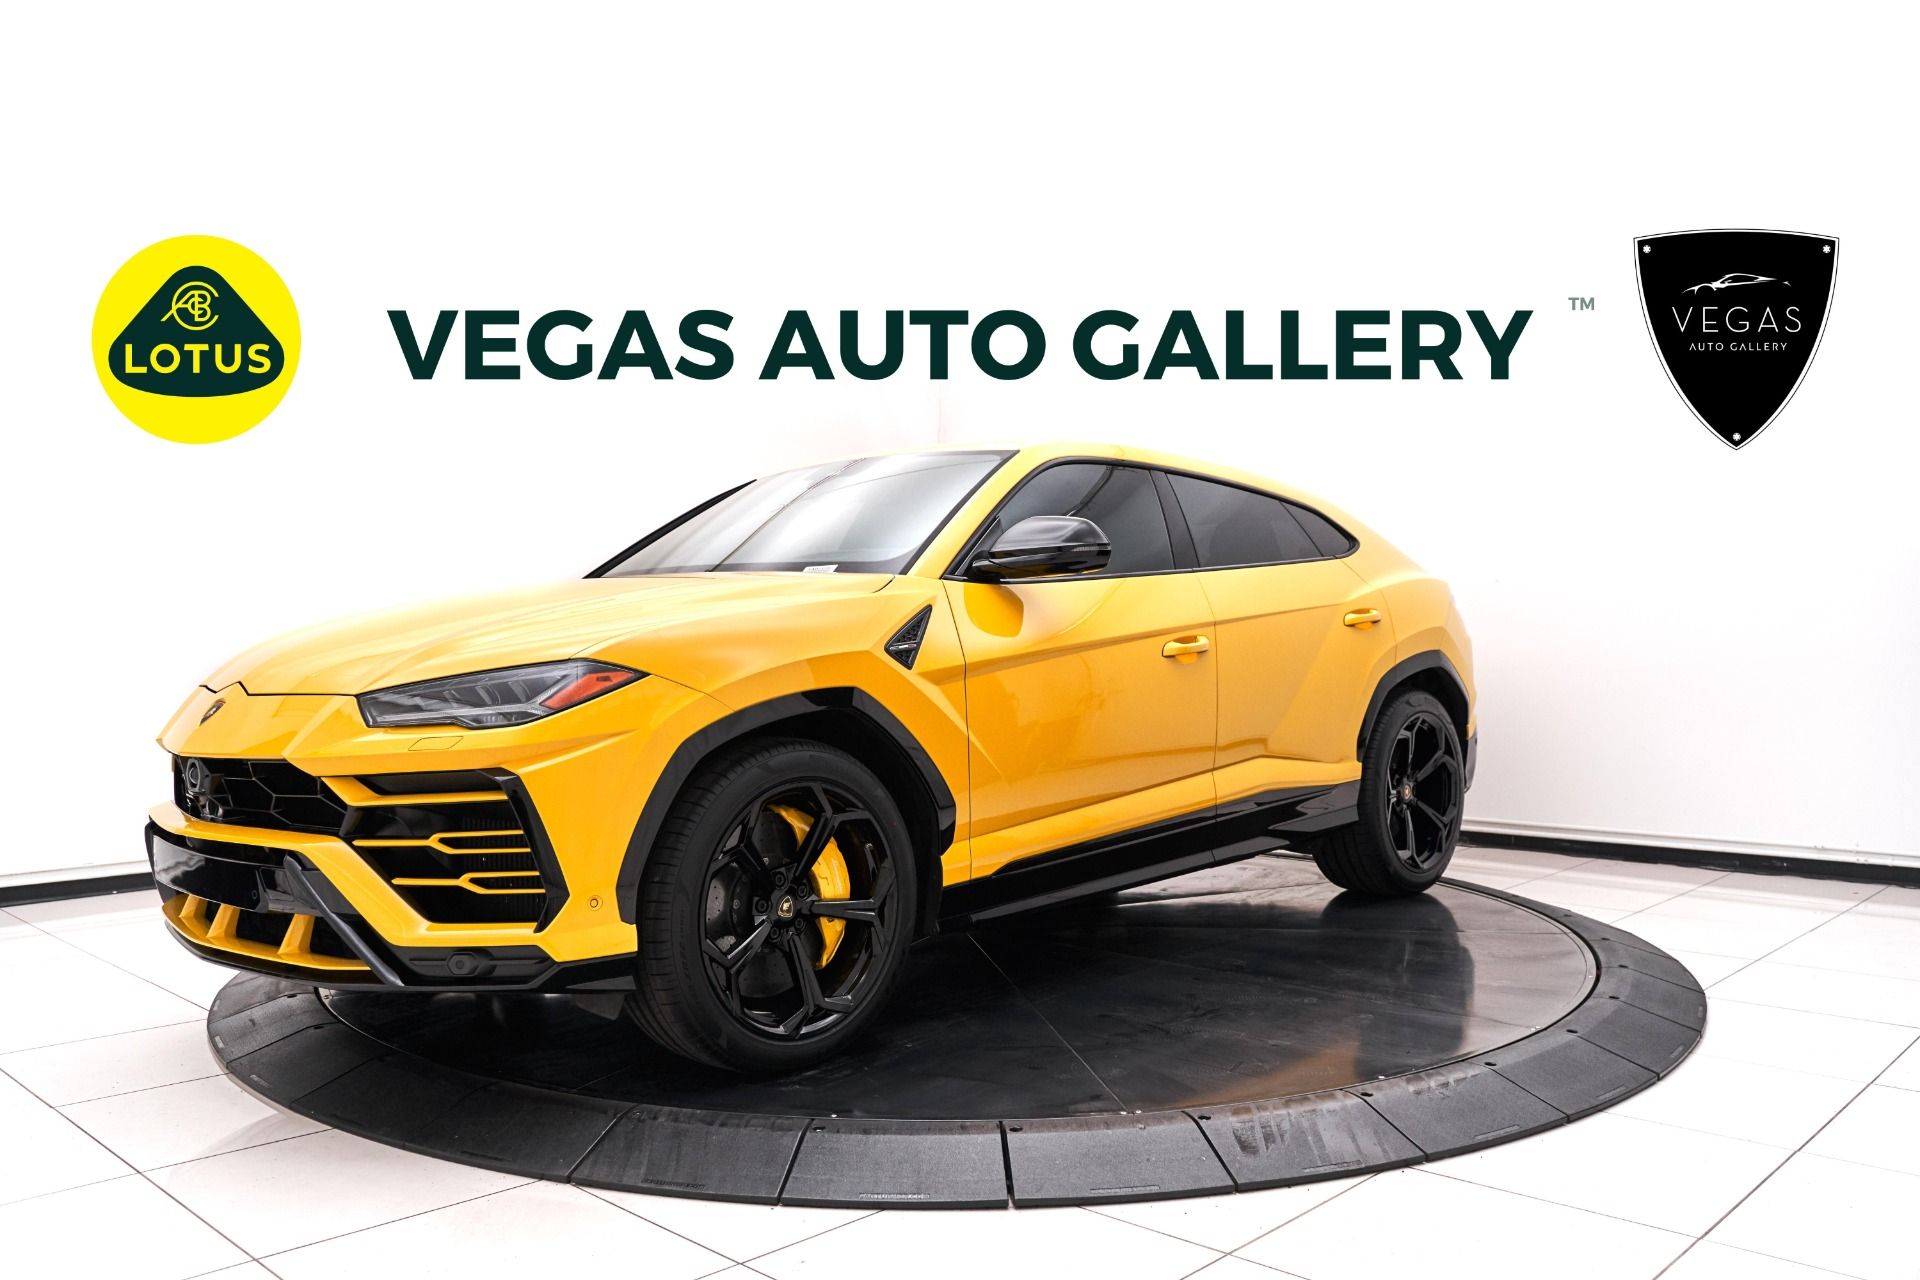 The Lamborghini SUV from Vegas Auto Gallery